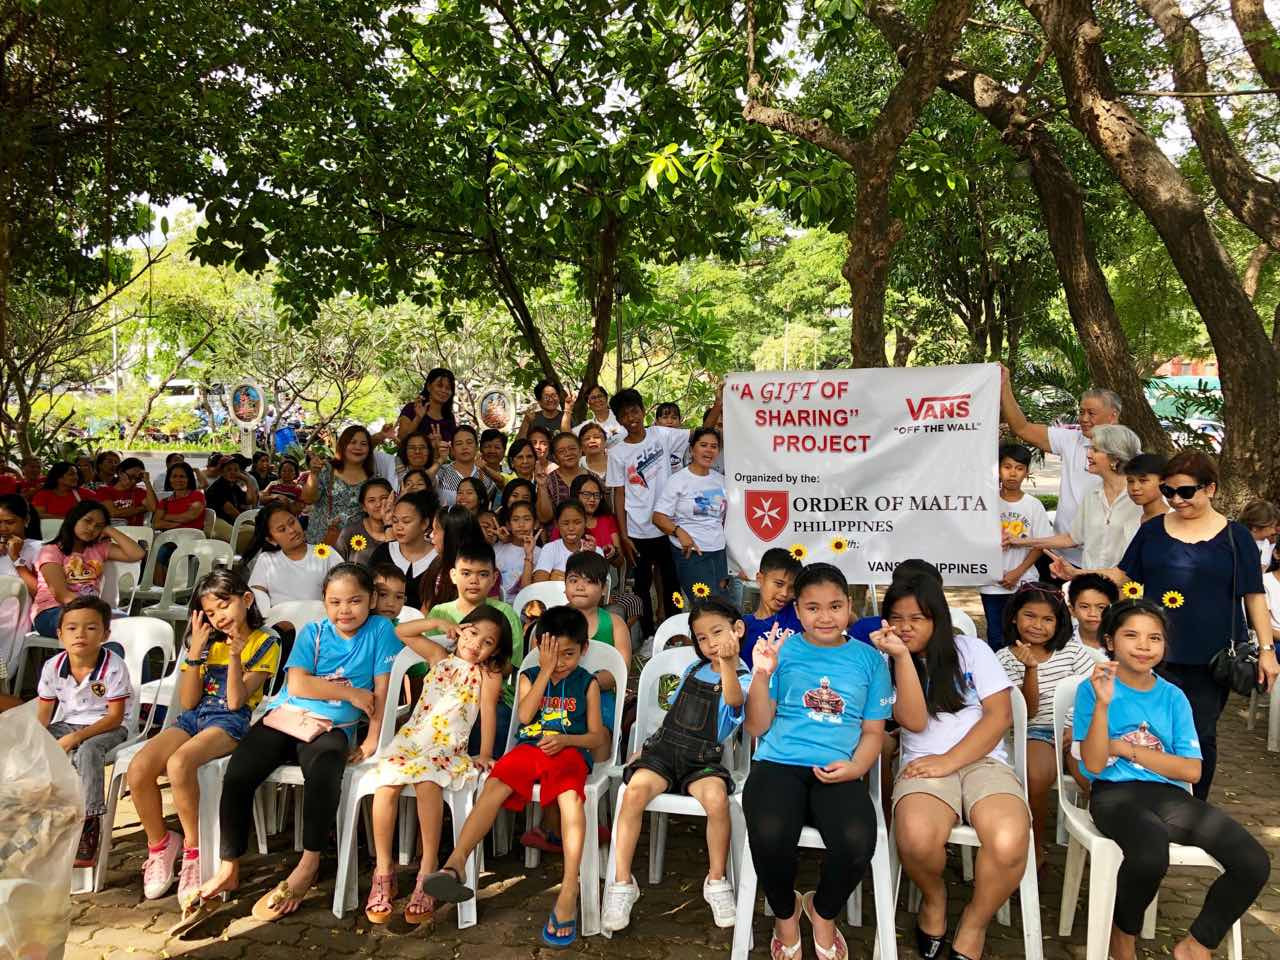 Un nuevo proyecto ofrece zapatos a 15.000 niños y adultos desfavorecidos en Filipinas